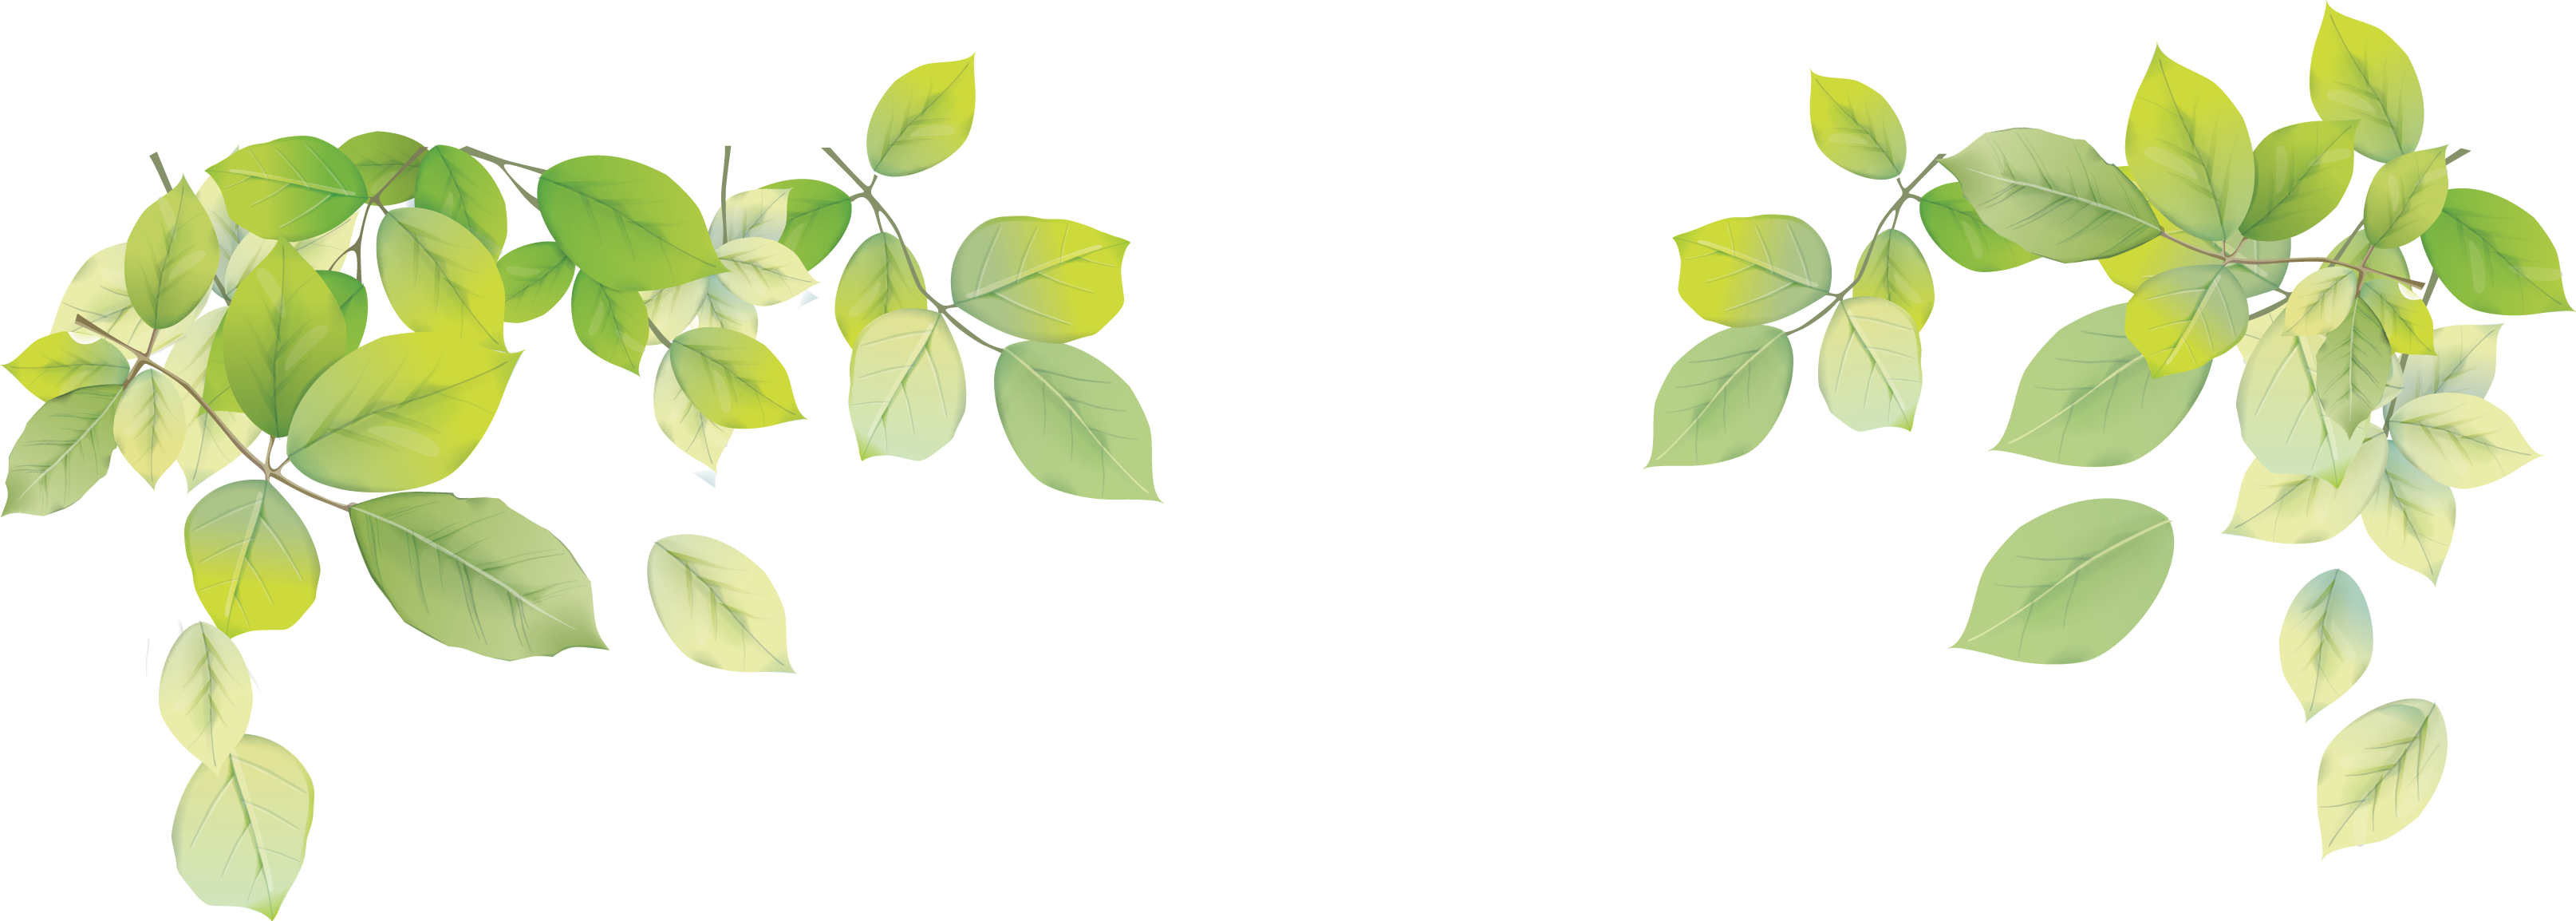 Transparent Png Leaf Image - Green Leaves Background Png (3229x1154)